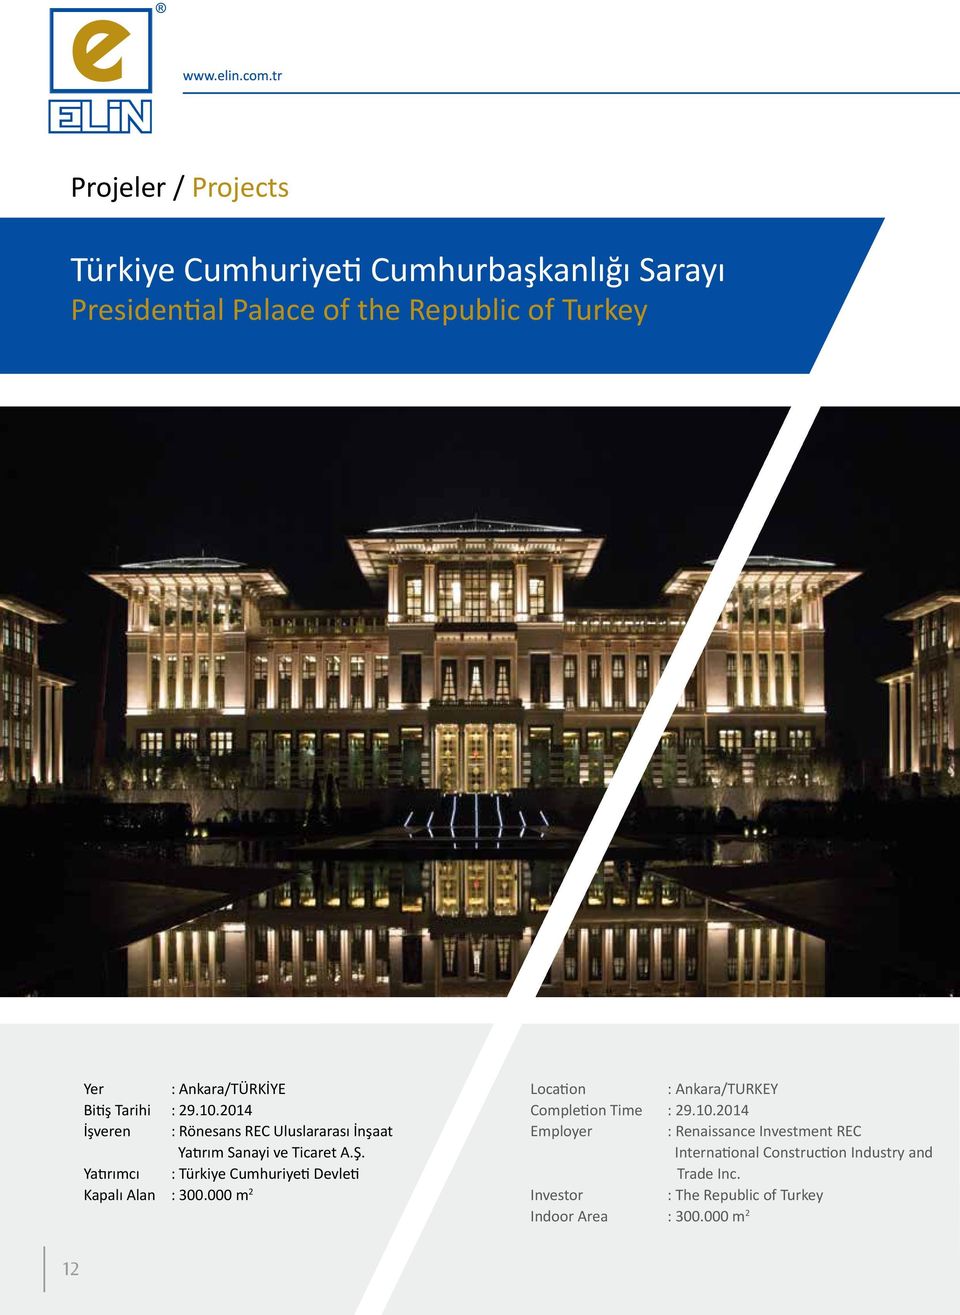 Yatırımcı : Türkiye Cumhuriyeti Devleti Kapalı Alan : 300.000 m 2 Location : Ankara/TURKEY Completion Time : 29.10.